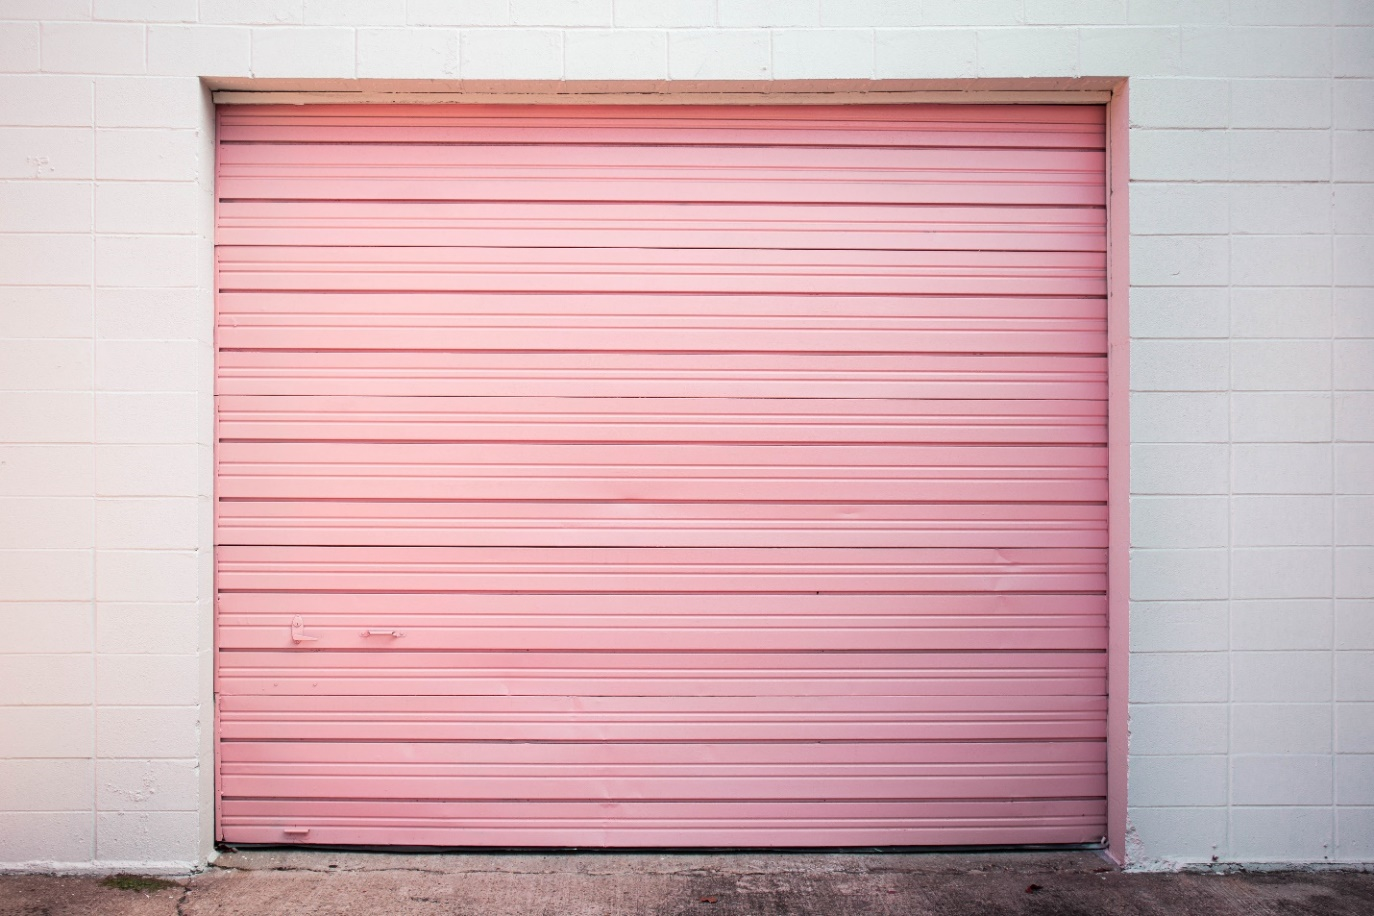 Image of a Pink Garage Door